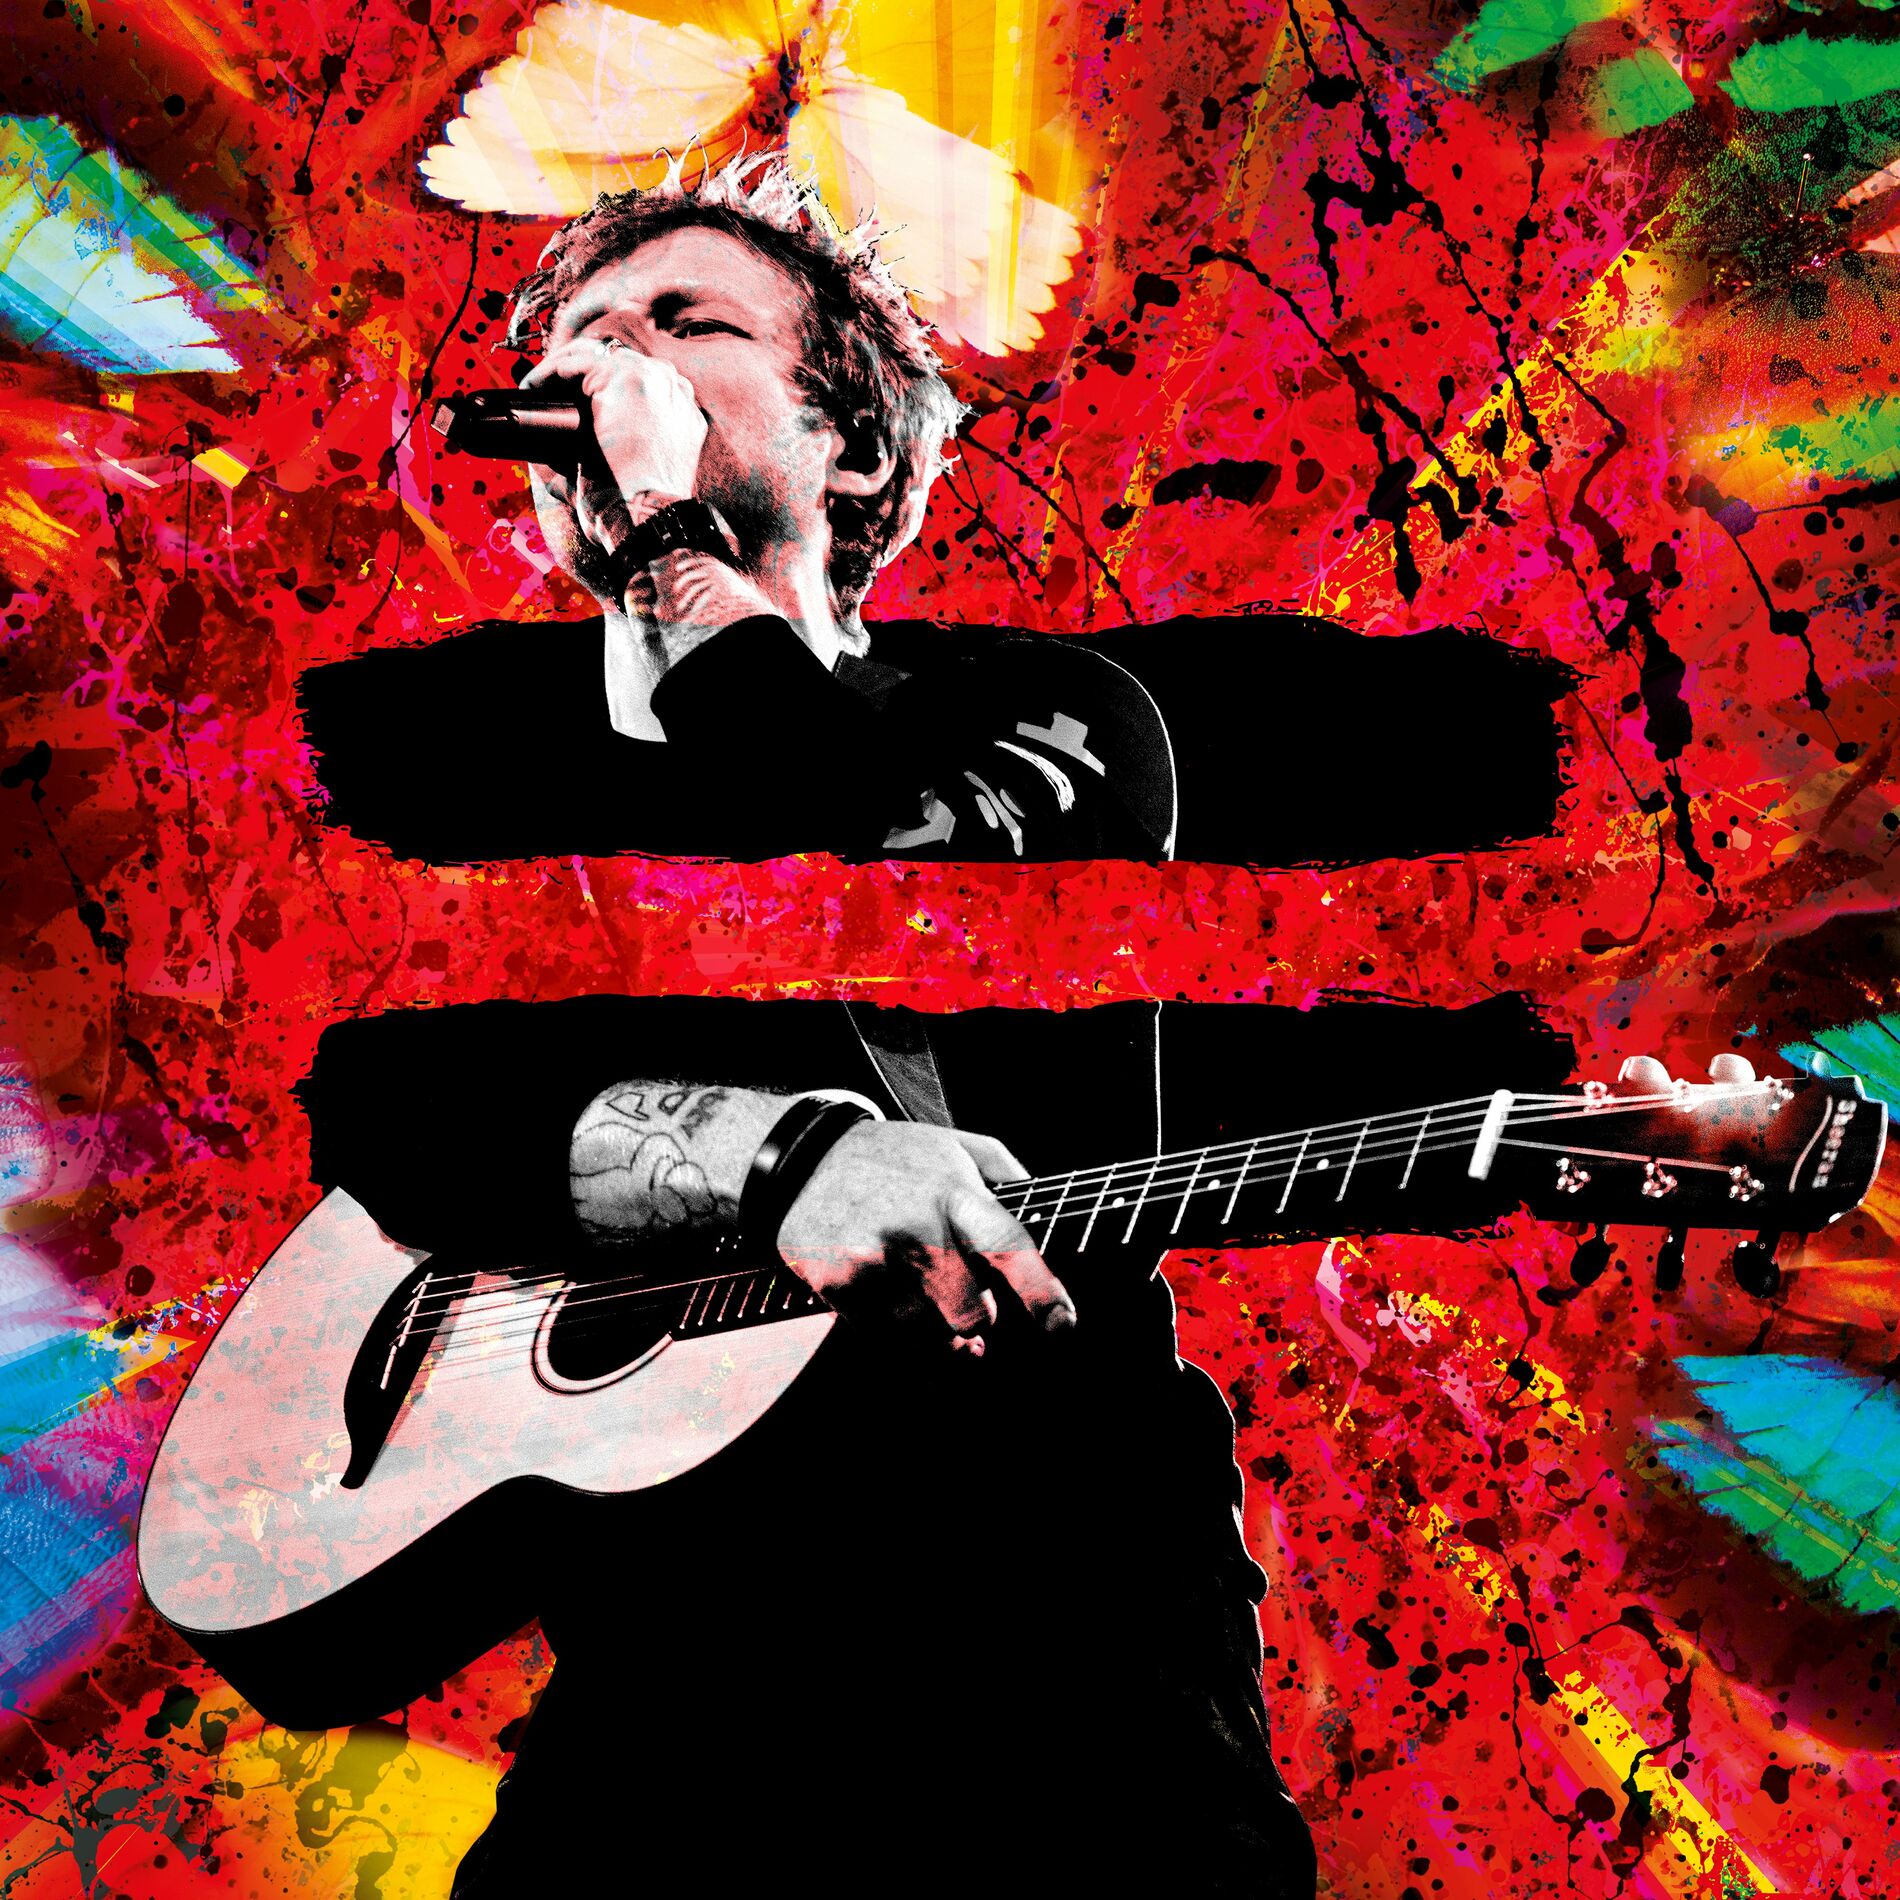 Ed Sheeran - = (Tour Edition): lyrics and songs | Deezer